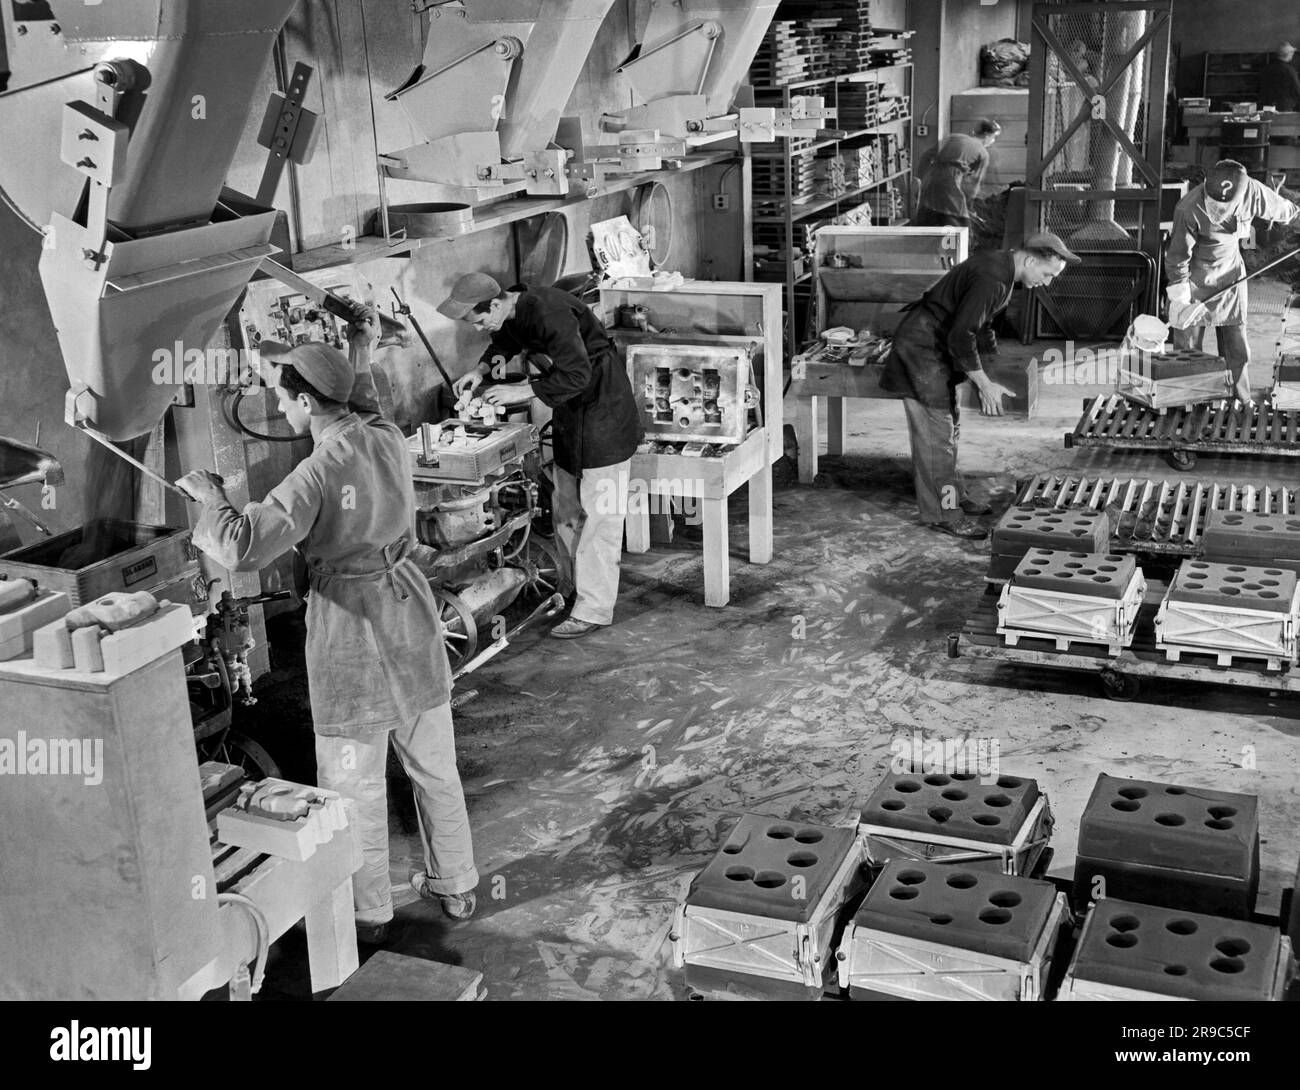 Los Angeles, Californie : c. 1955 travailleurs de la section de fonderie de coulée de précision de l'AiResearch Manufacturing Company. Banque D'Images